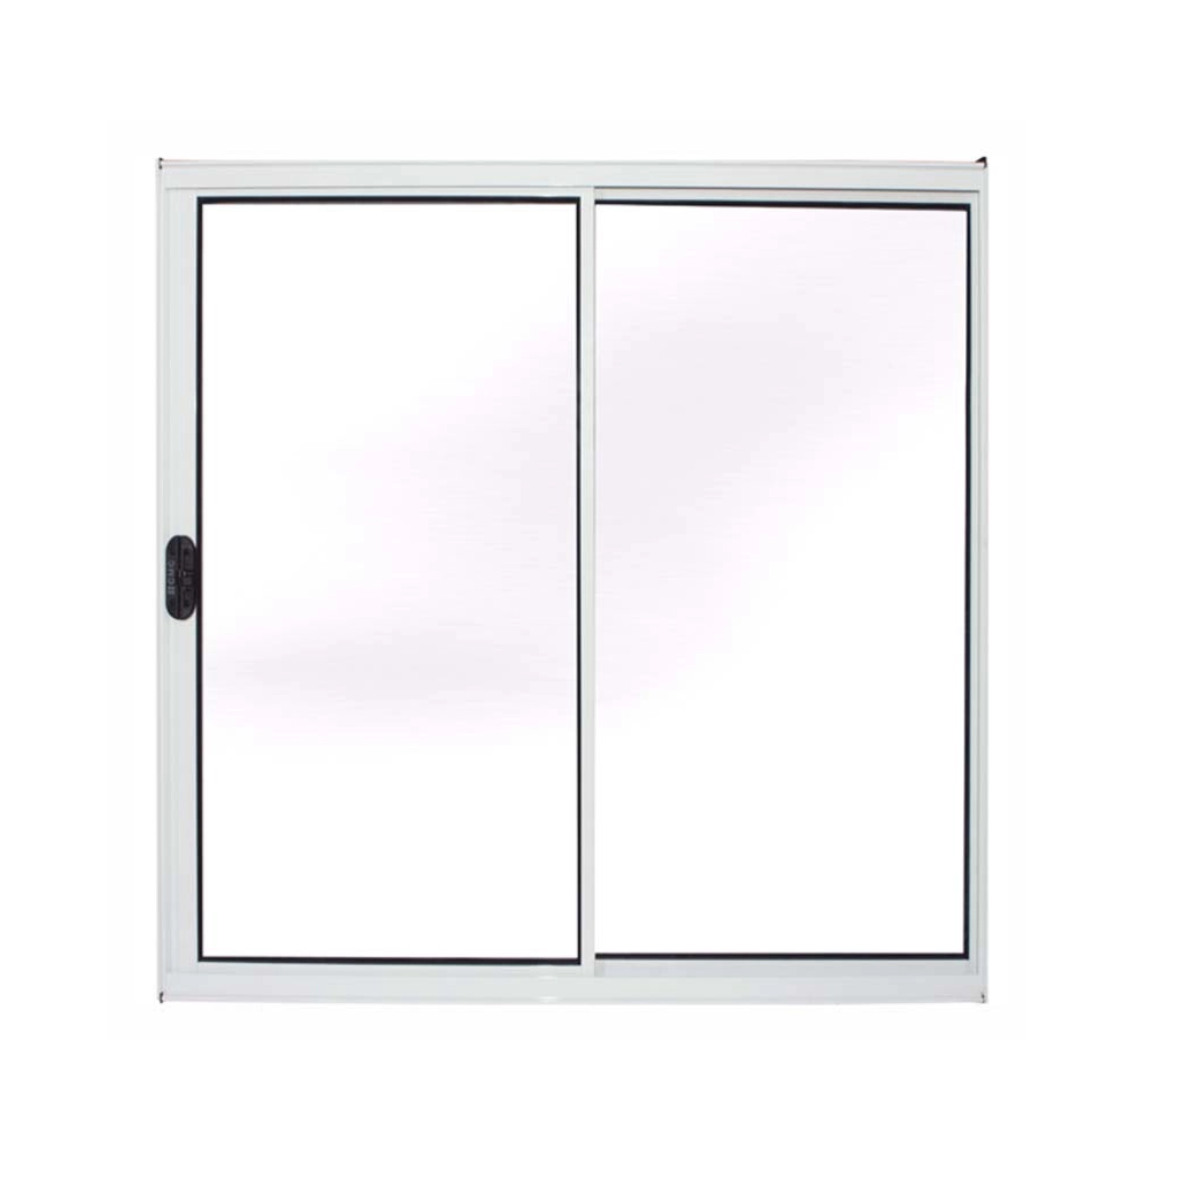 janela vitro sala alumínio branco 100x150 s/grade 2fls - 1